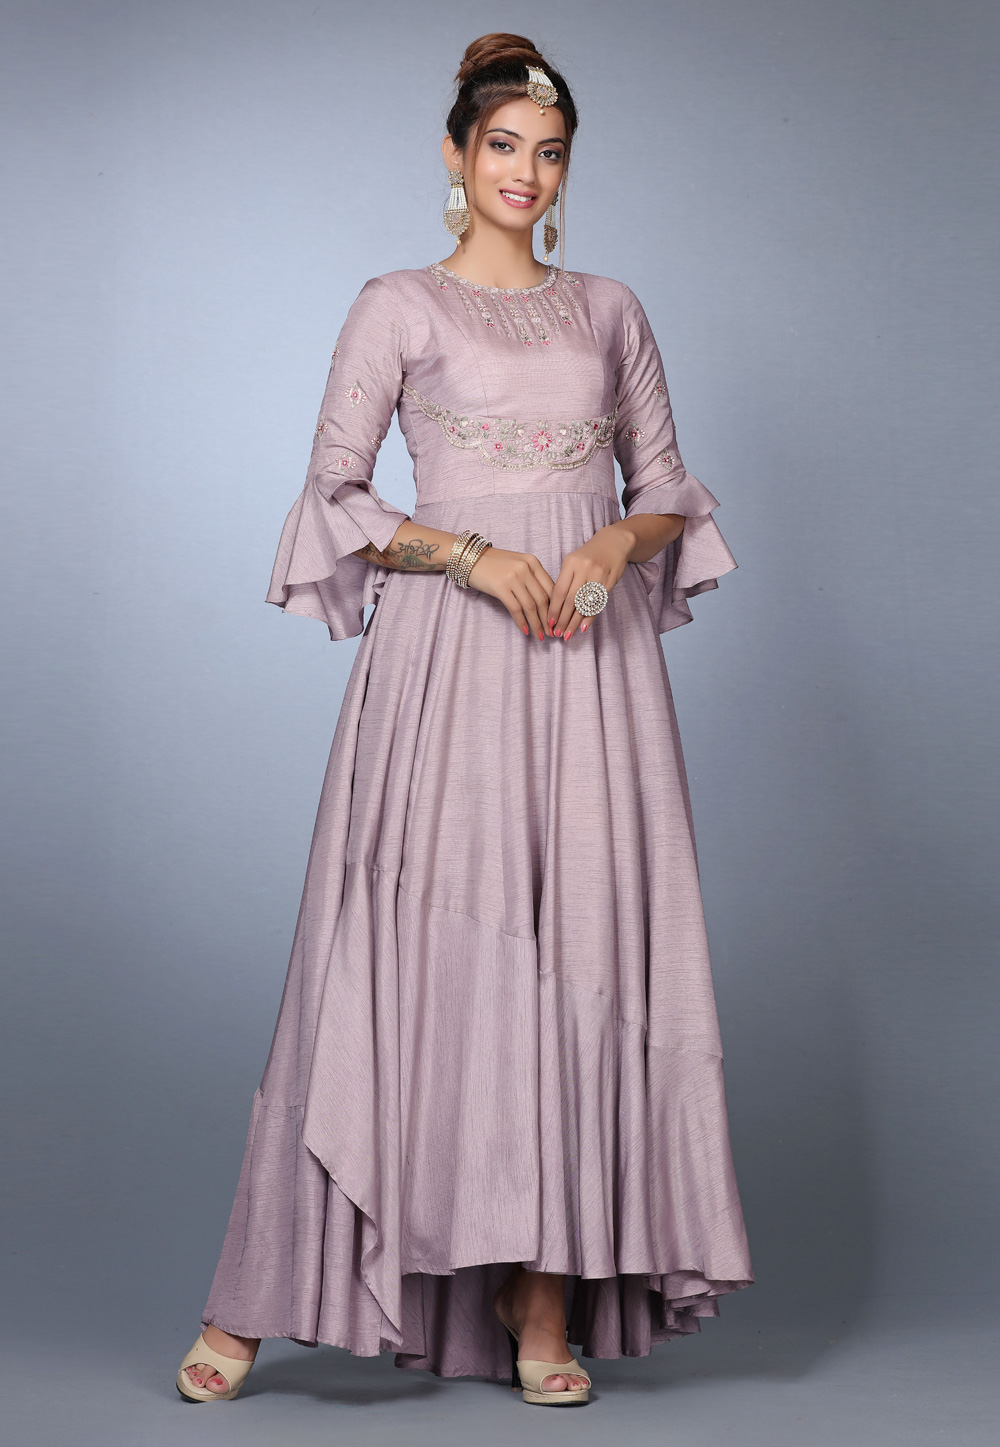 Buy Light Pink Salwar Kameez Online at Best Price on Indian Cloth